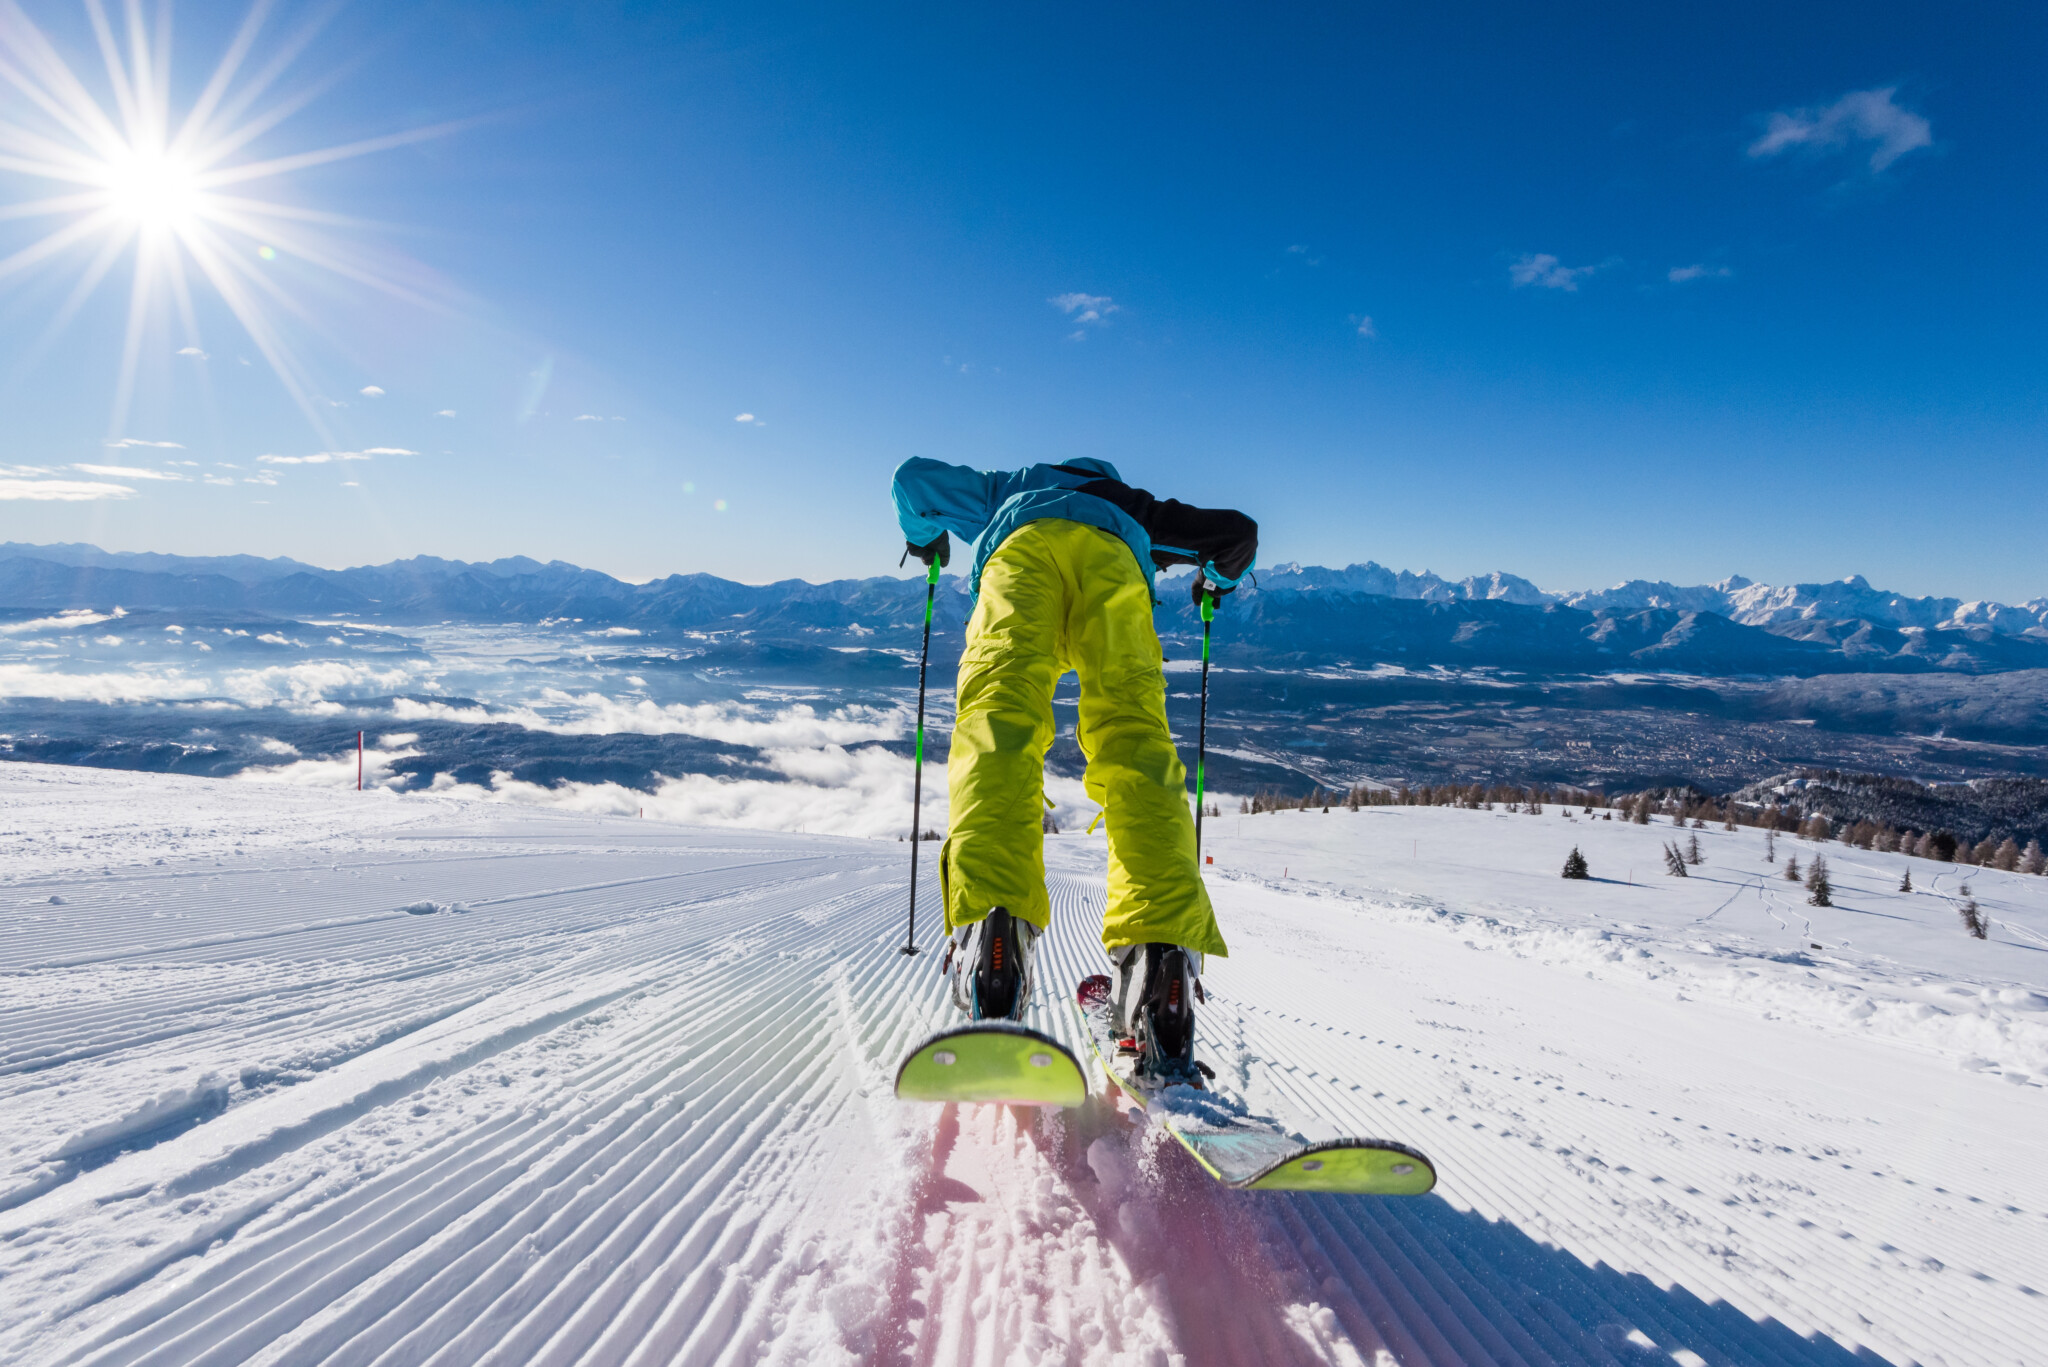 Ab auf die Piste: Am 24. Dezember startet die Skisaison und du kannst dafür Tickets gewinnen!